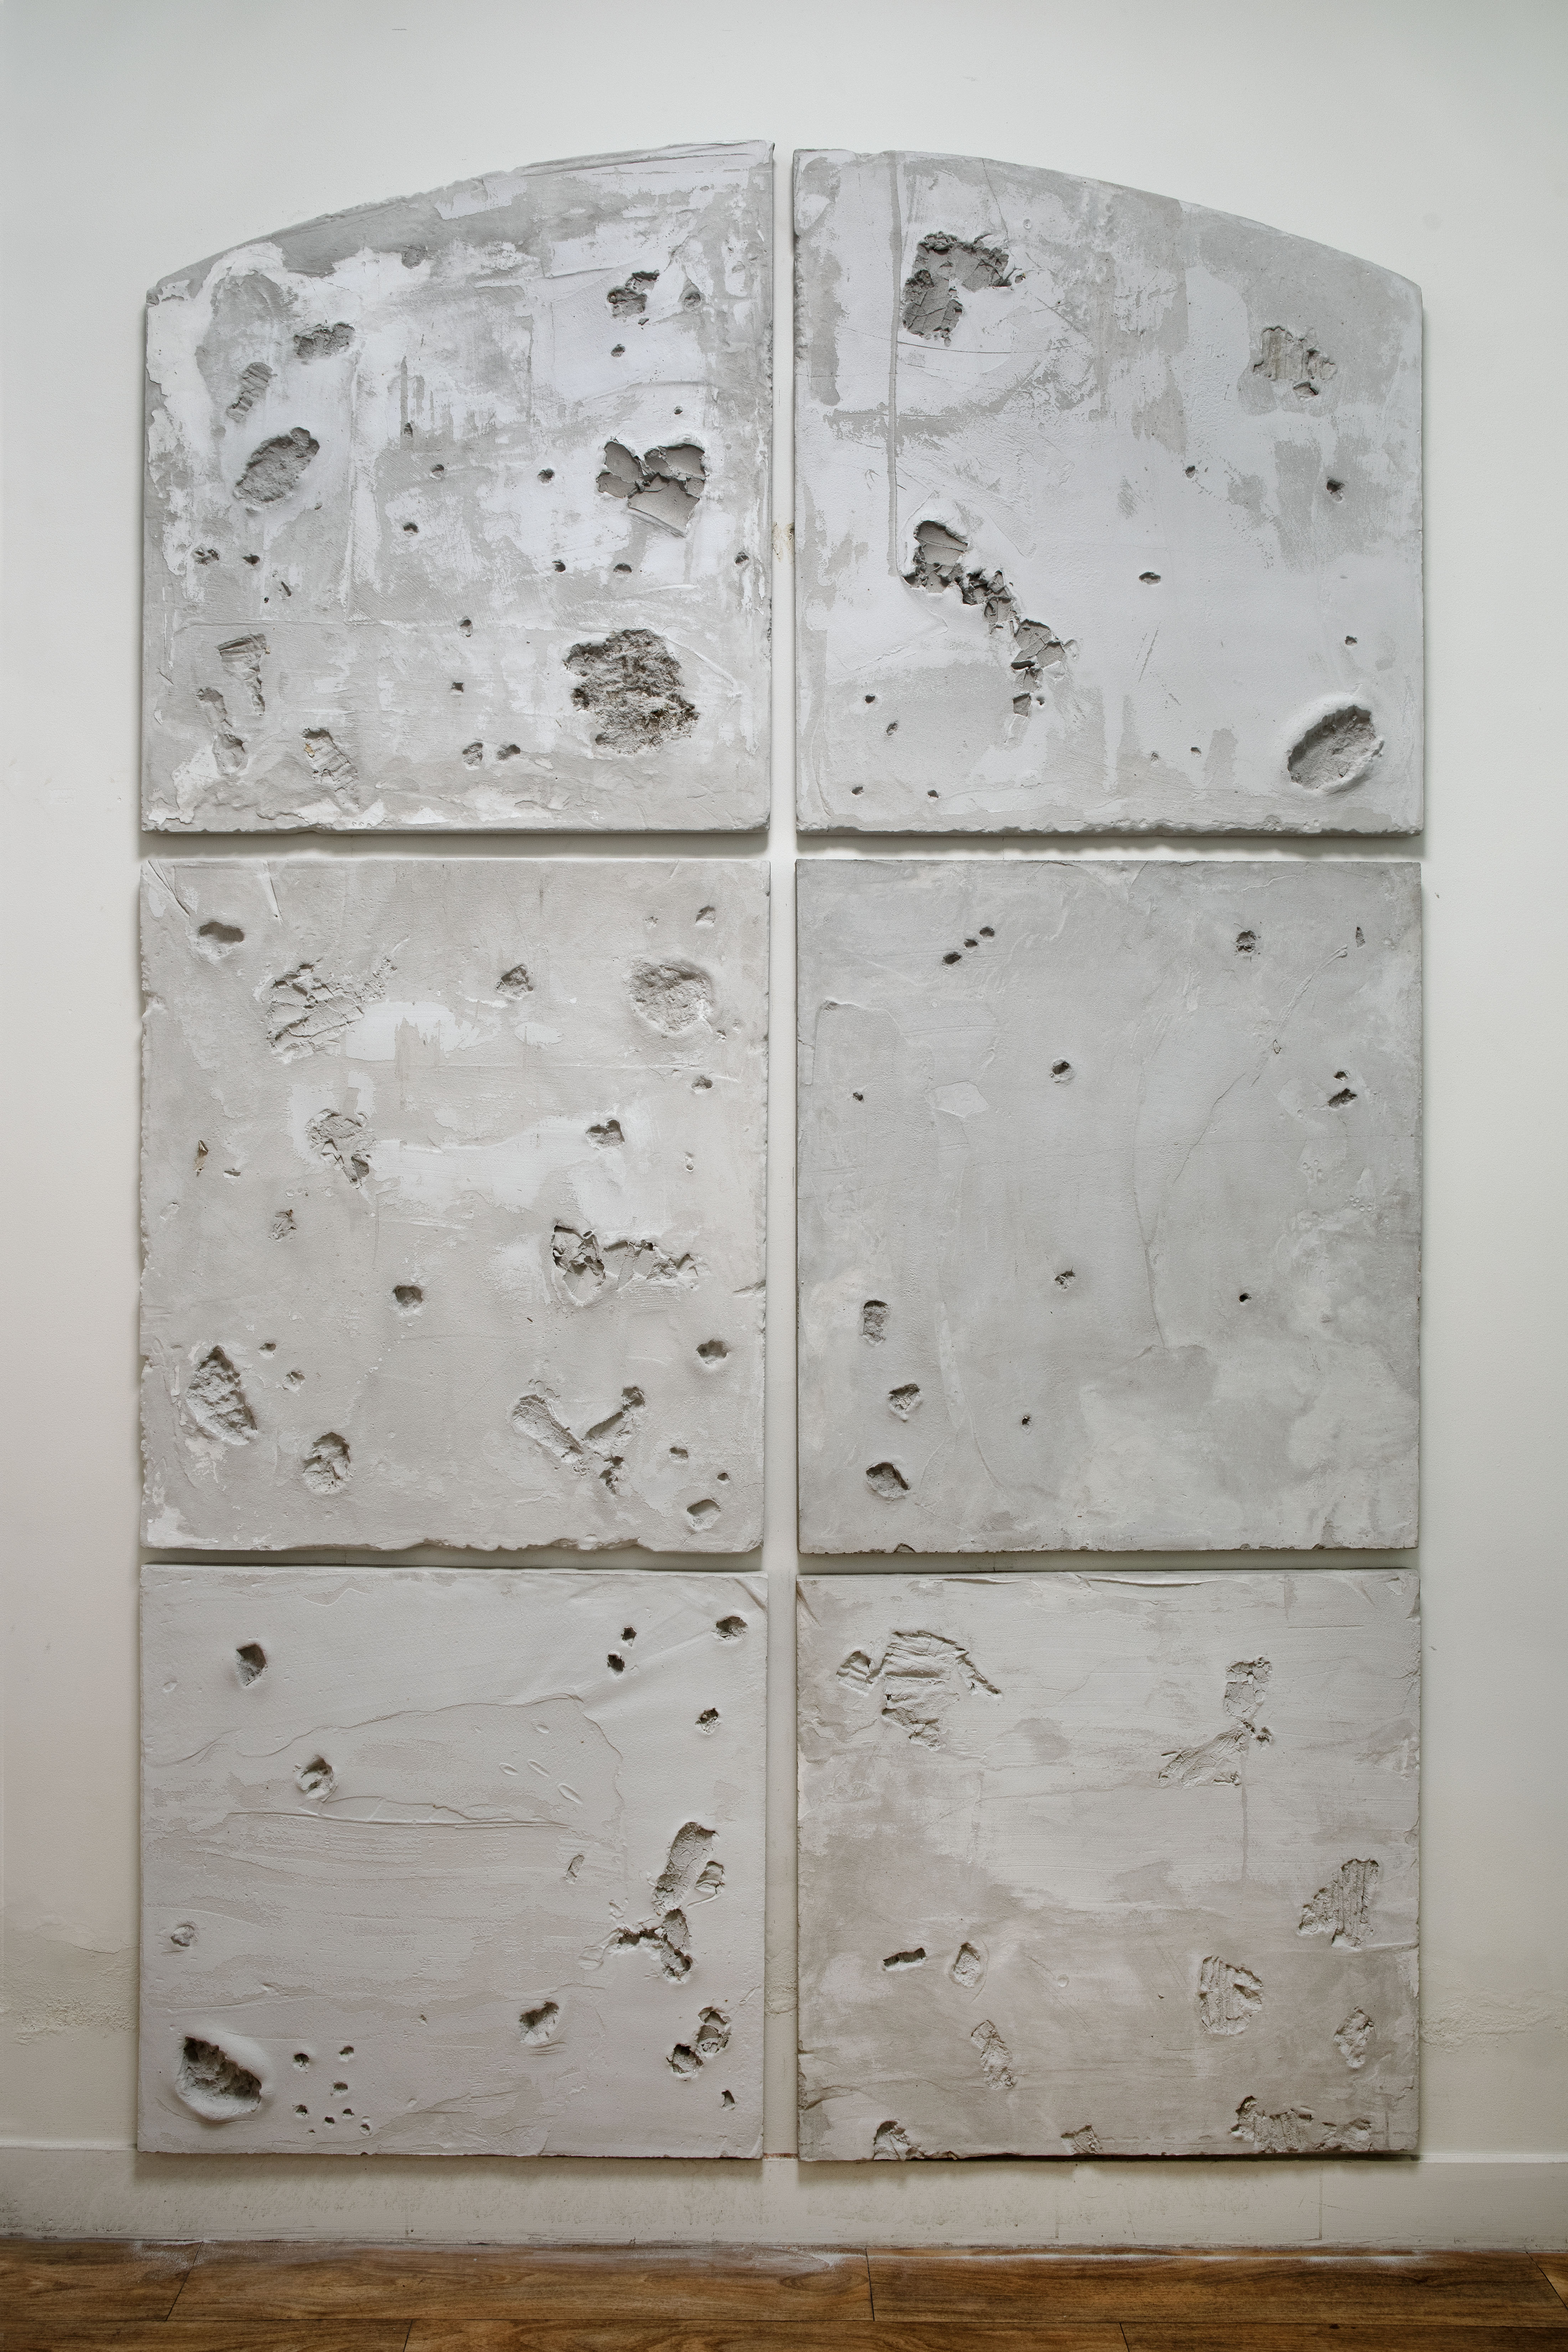 Foto van zes panelen uit het werk ‘dragen’, alsof het een raamvenster is met 6 vensters. De bovenste twee zijn in boogvorm gegoten. De panelen zijn in cement gegoten en bevatten sporen van materialen uit de kelder.